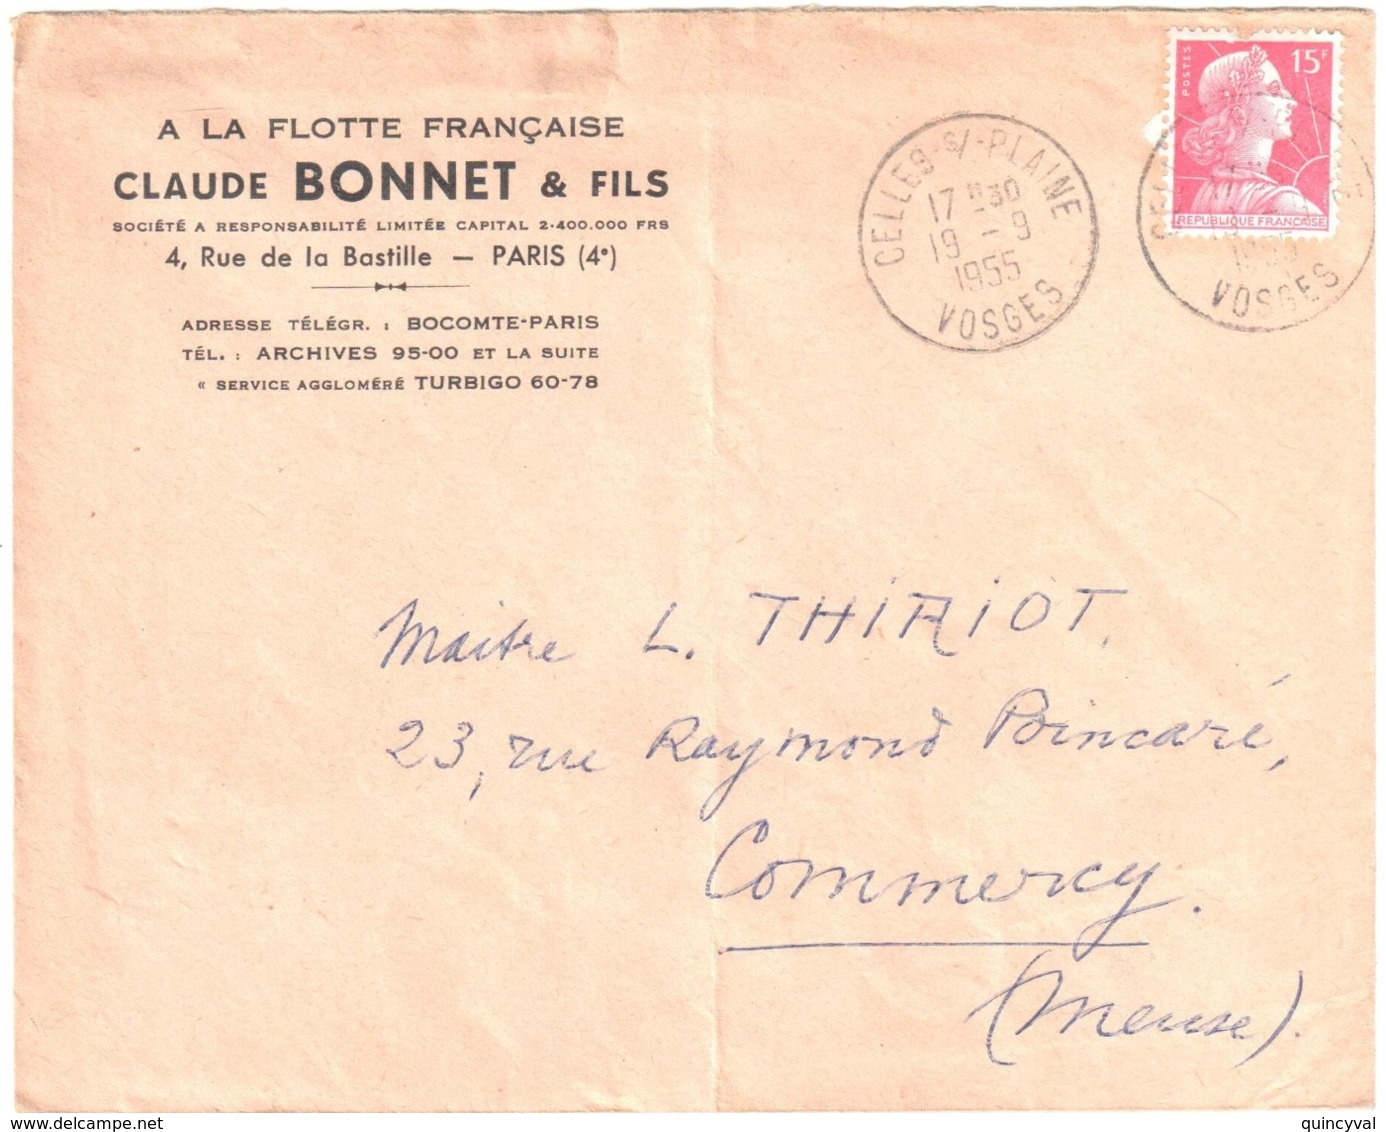 CELLES Sur PLAINE Vosges Lettre Entête Flotte Française C BONNET 15F Muller Rouge Yv 1011 Ob 19 9 1955 - Covers & Documents